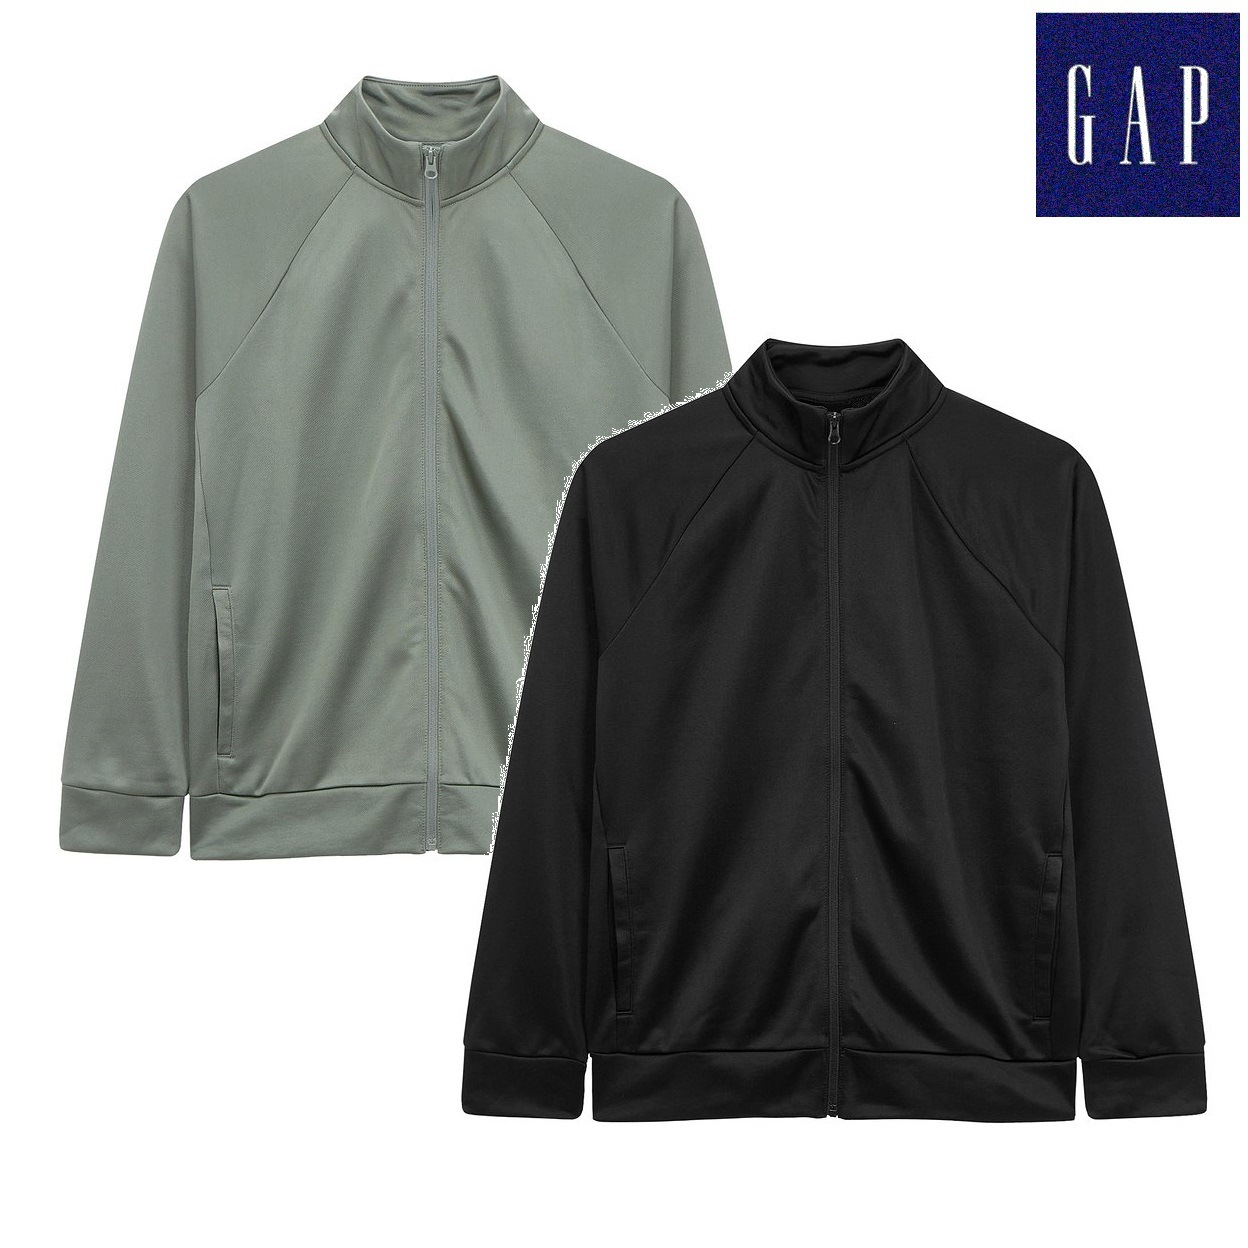 ギャップRaglan sleeve track jacket 2色 新商品 韓国の人気 韓国ファッション ジャージ 学生ファッション 肝節期 新学期 カップルアイテム ストリートファッション